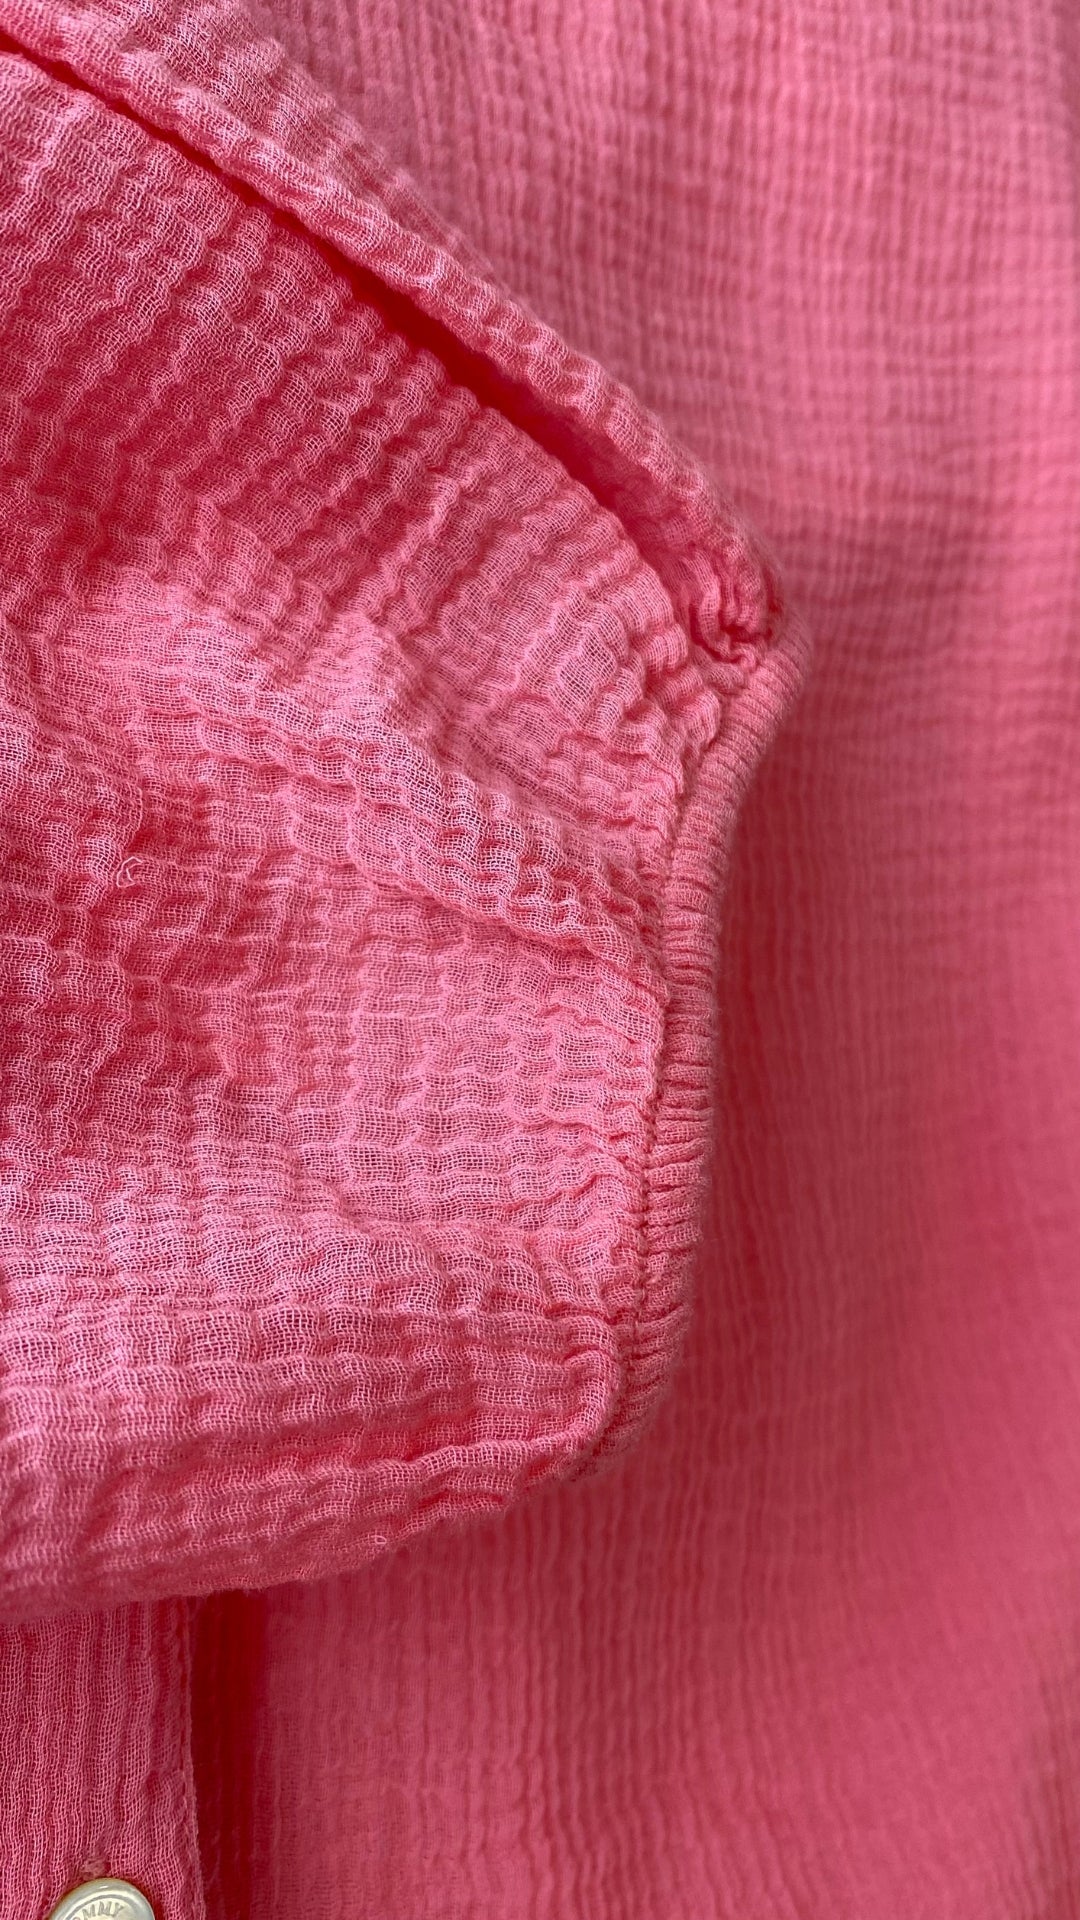 Blouse gaze de coton rose Tommy Bahama, taille small. Vue de la manche élastique.